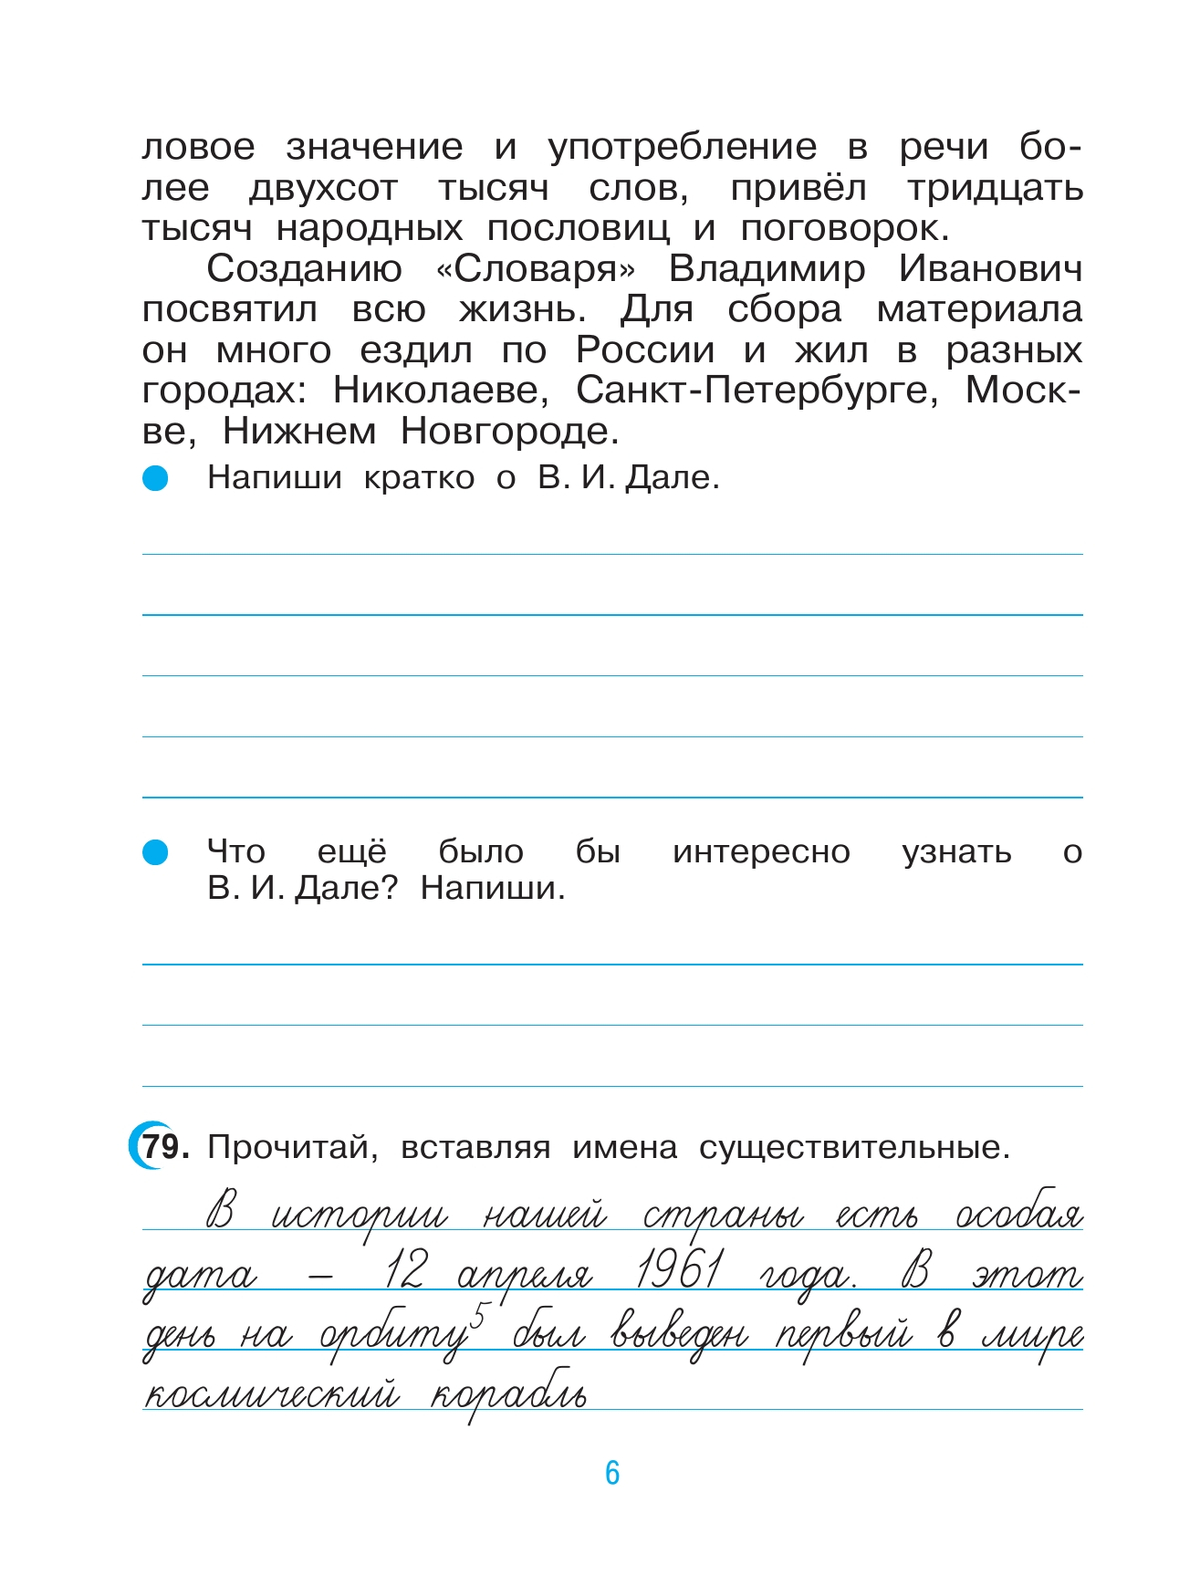 Русский язык. 3 класс. Рабочая тетрадь. В 2 ч. Часть 2 3